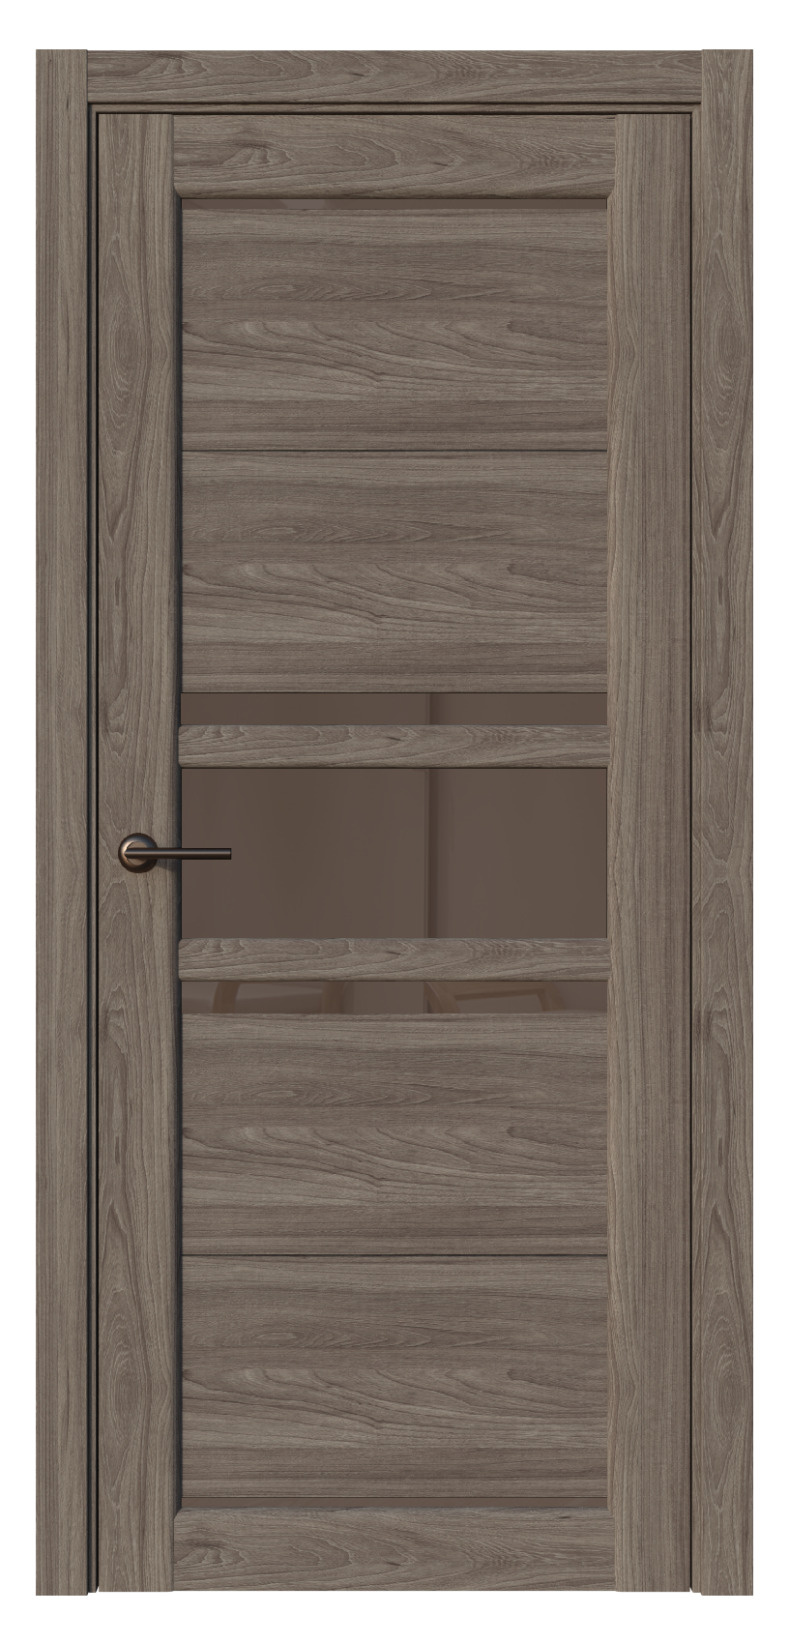 Questdoors Межкомнатная дверь QX13, арт. 17586 - фото №1